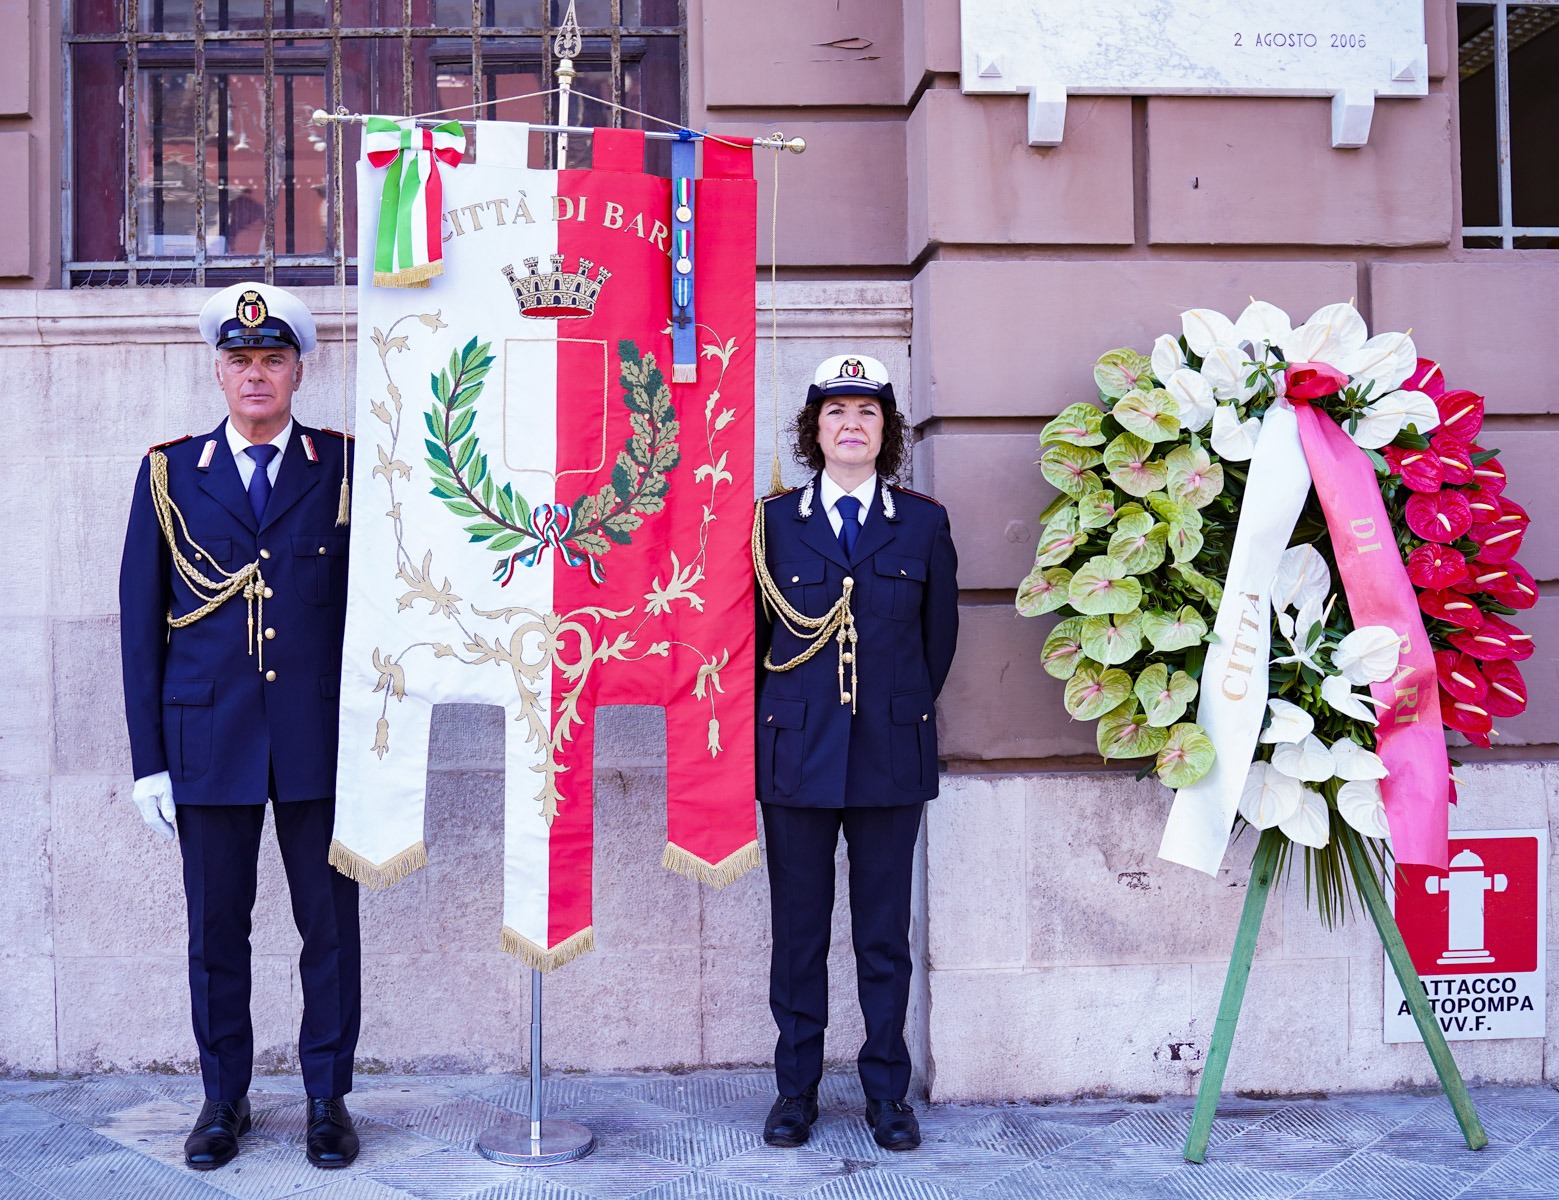 Galleria Il presidente della Regione alla commemorazione delle vittime della strage di Bologna - Diapositiva 1 di 1